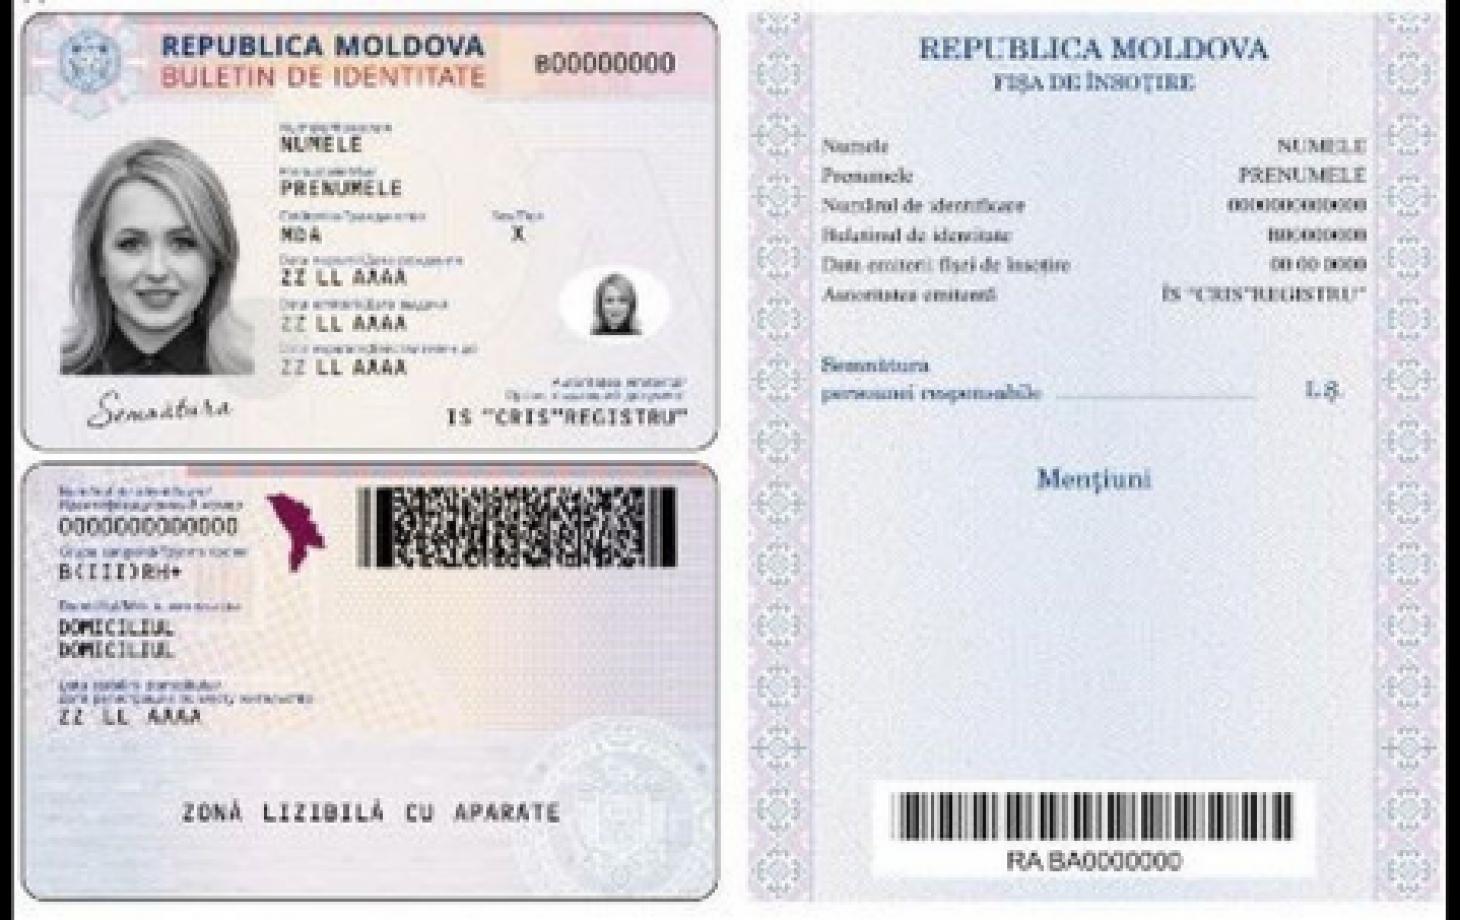 Образец удостоверения личности гражданина Республики Молдова